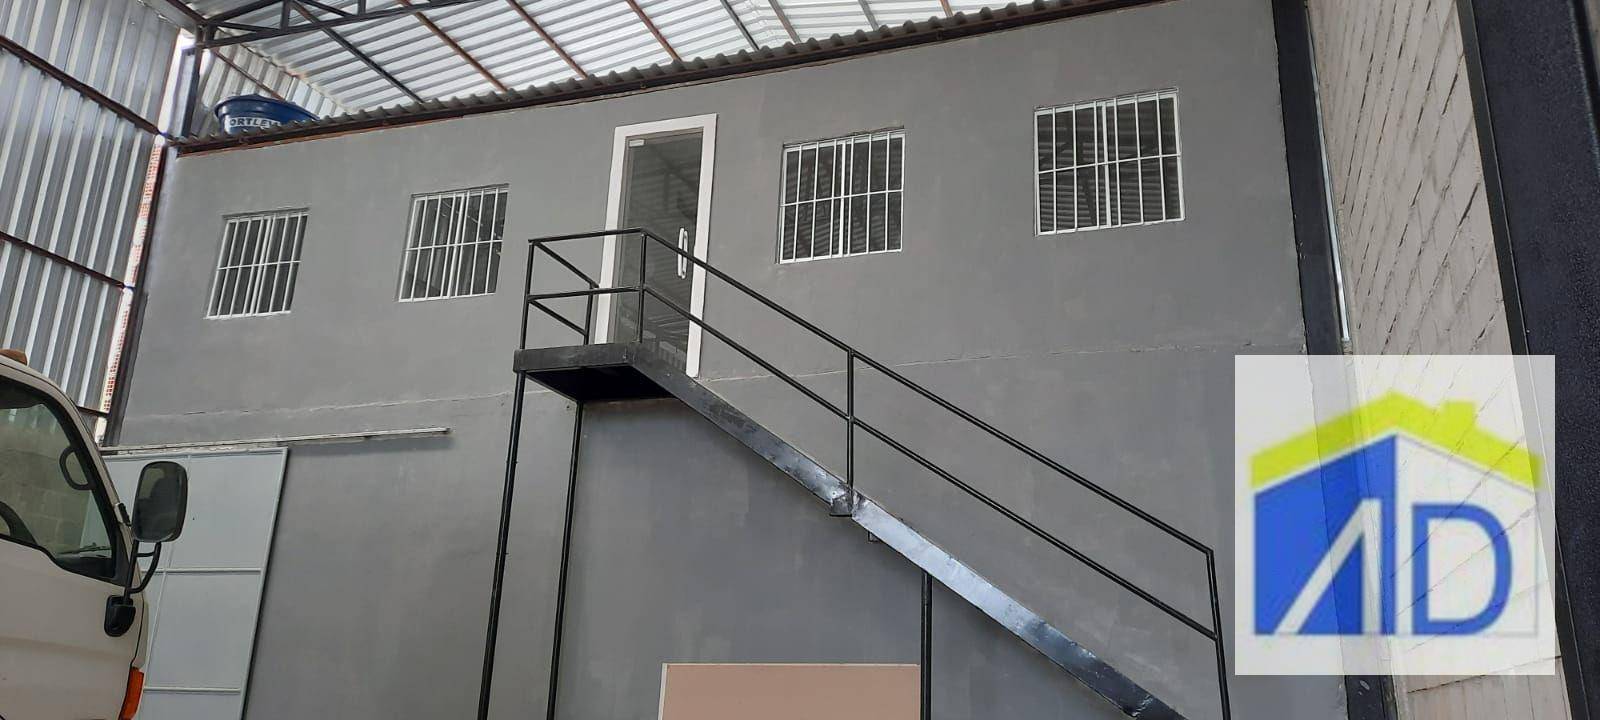 Depósito-Galpão, 330 m² - Foto 2